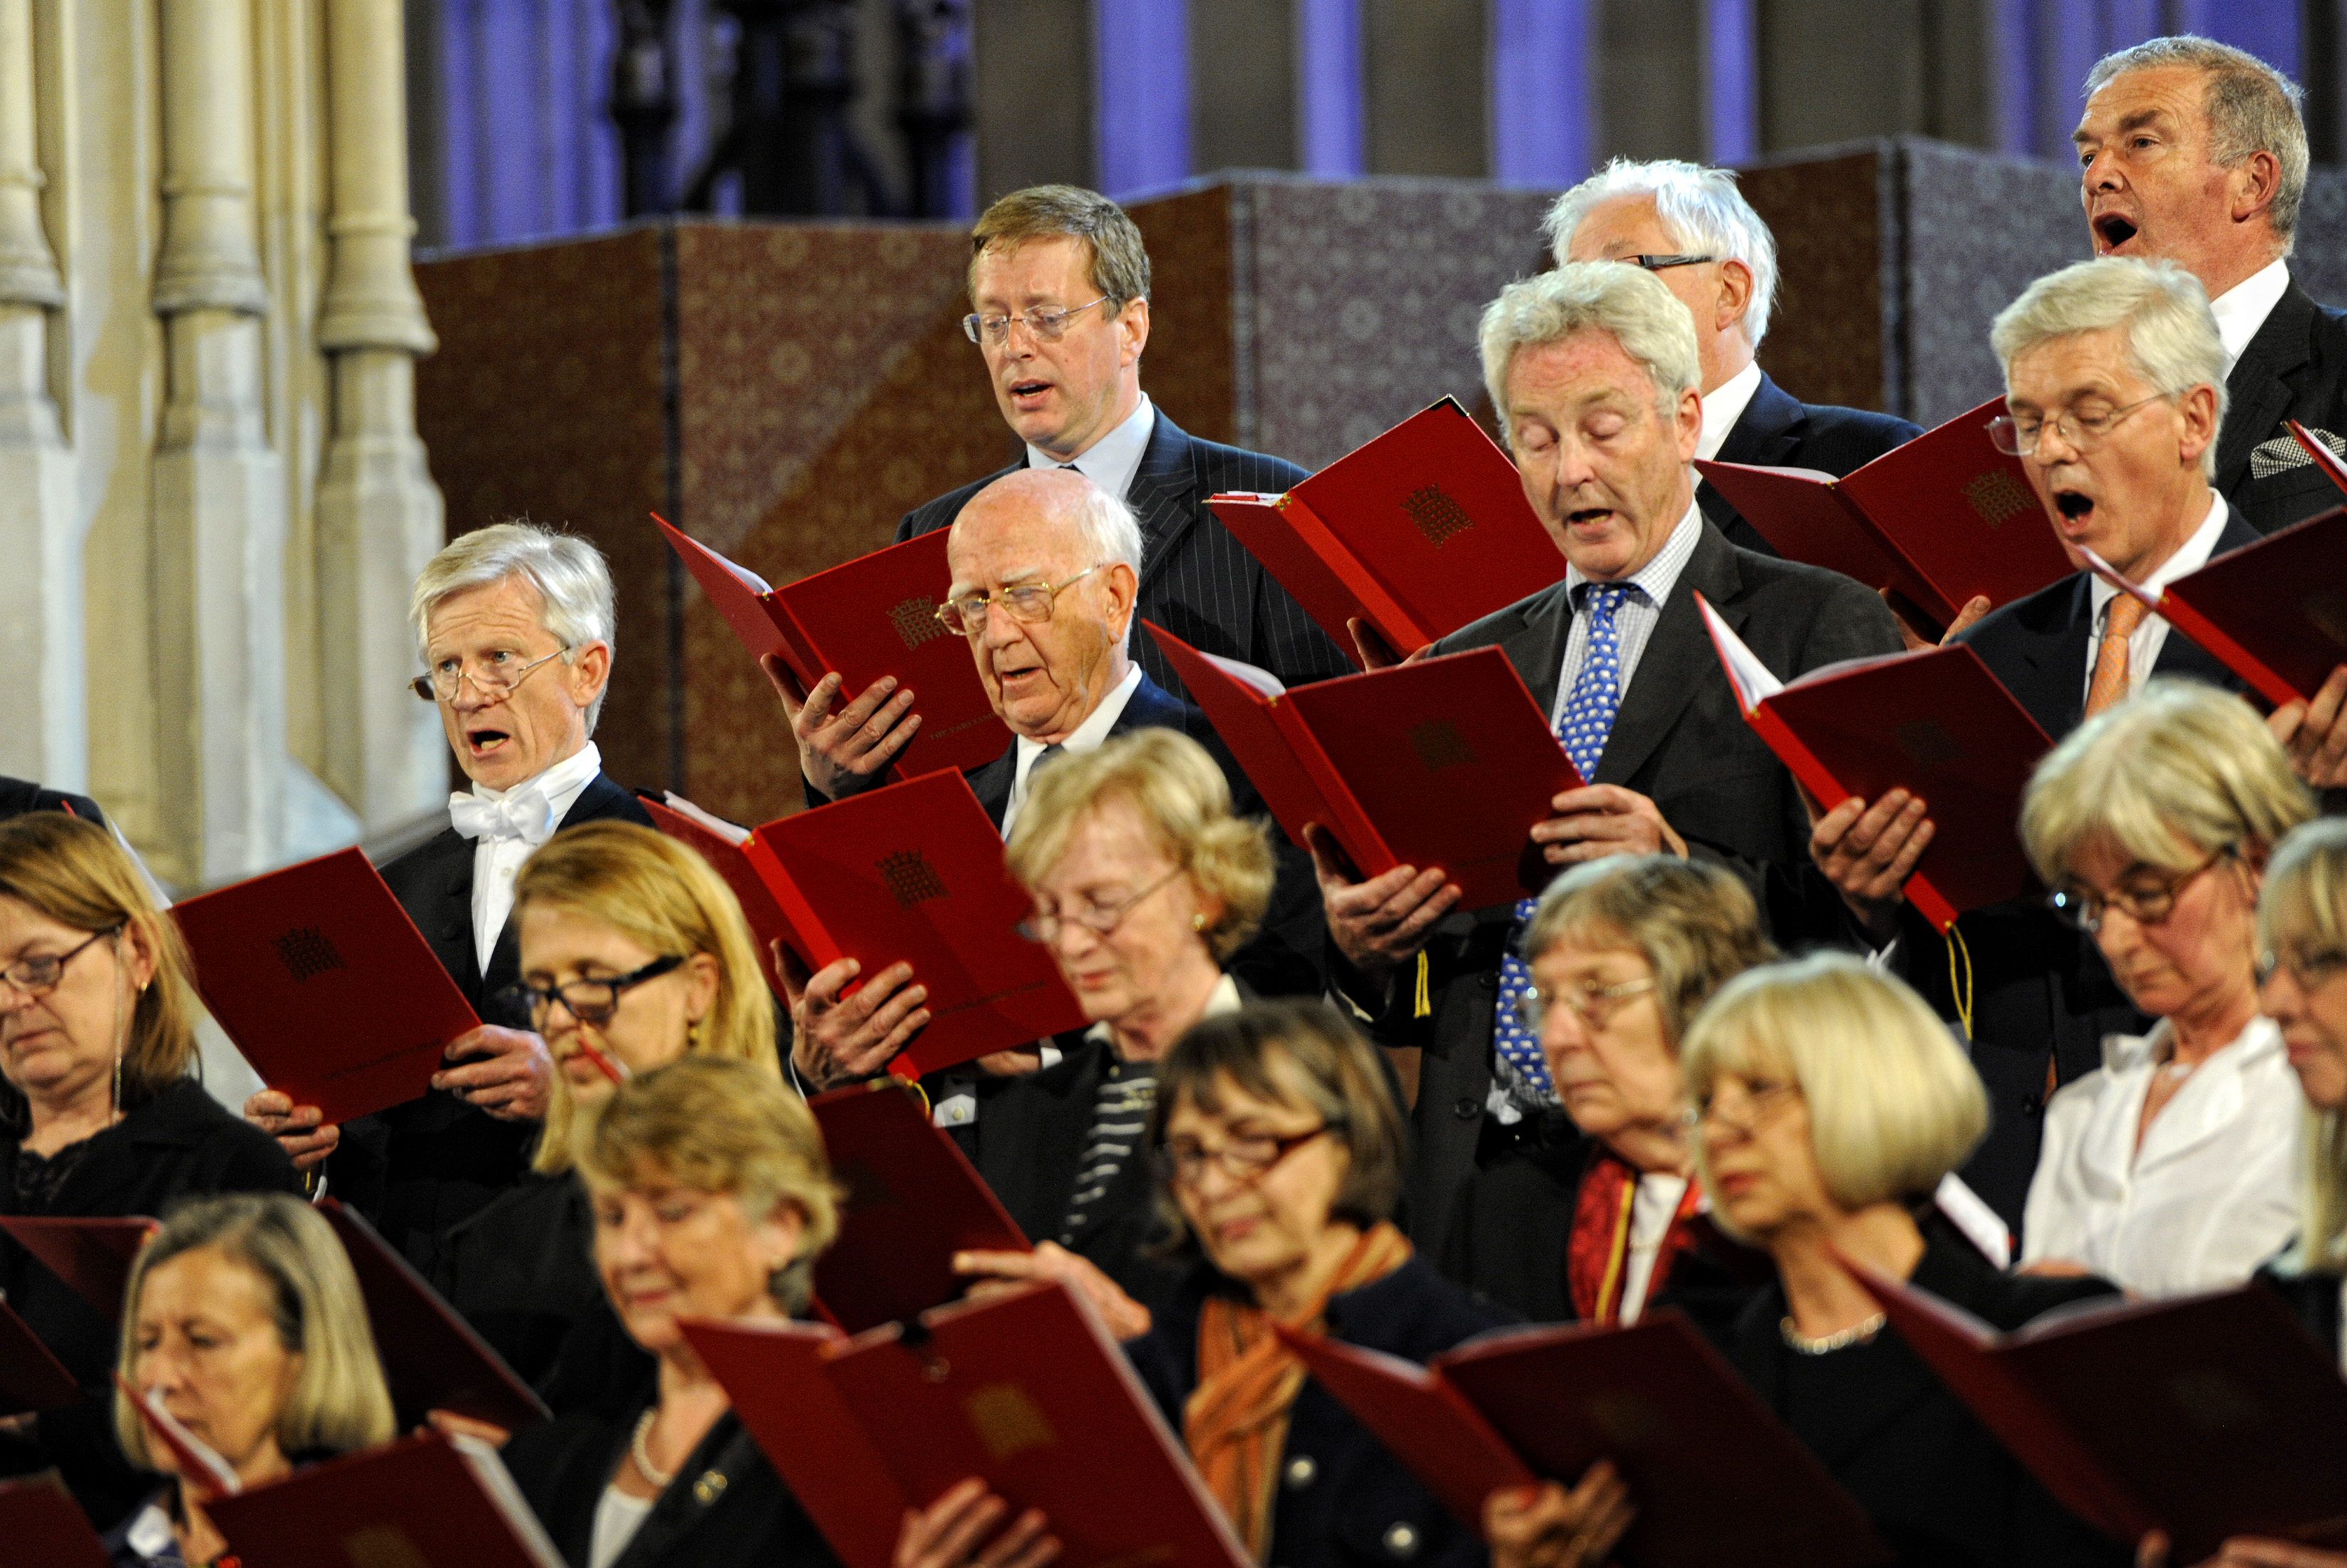 Parliament Choir